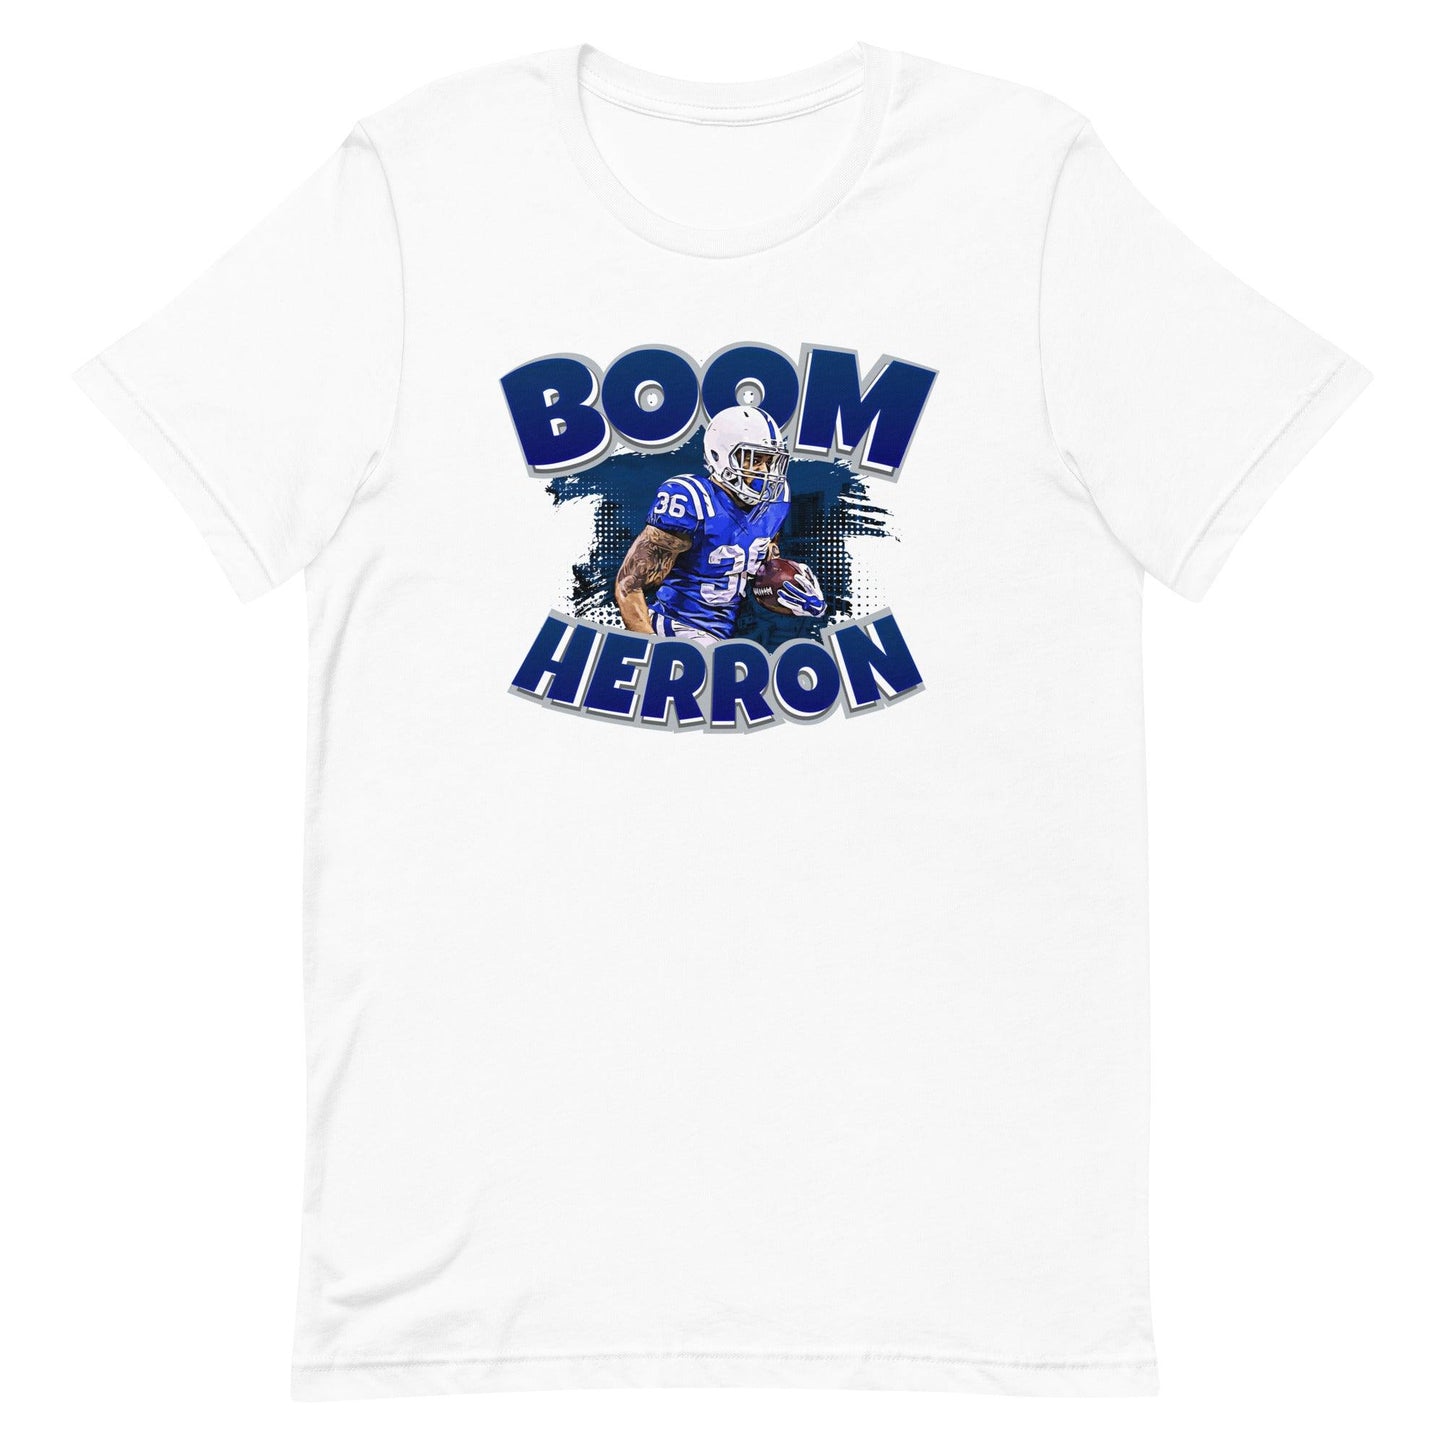 Boom Herron "Jersey" t-shirt - Fan Arch